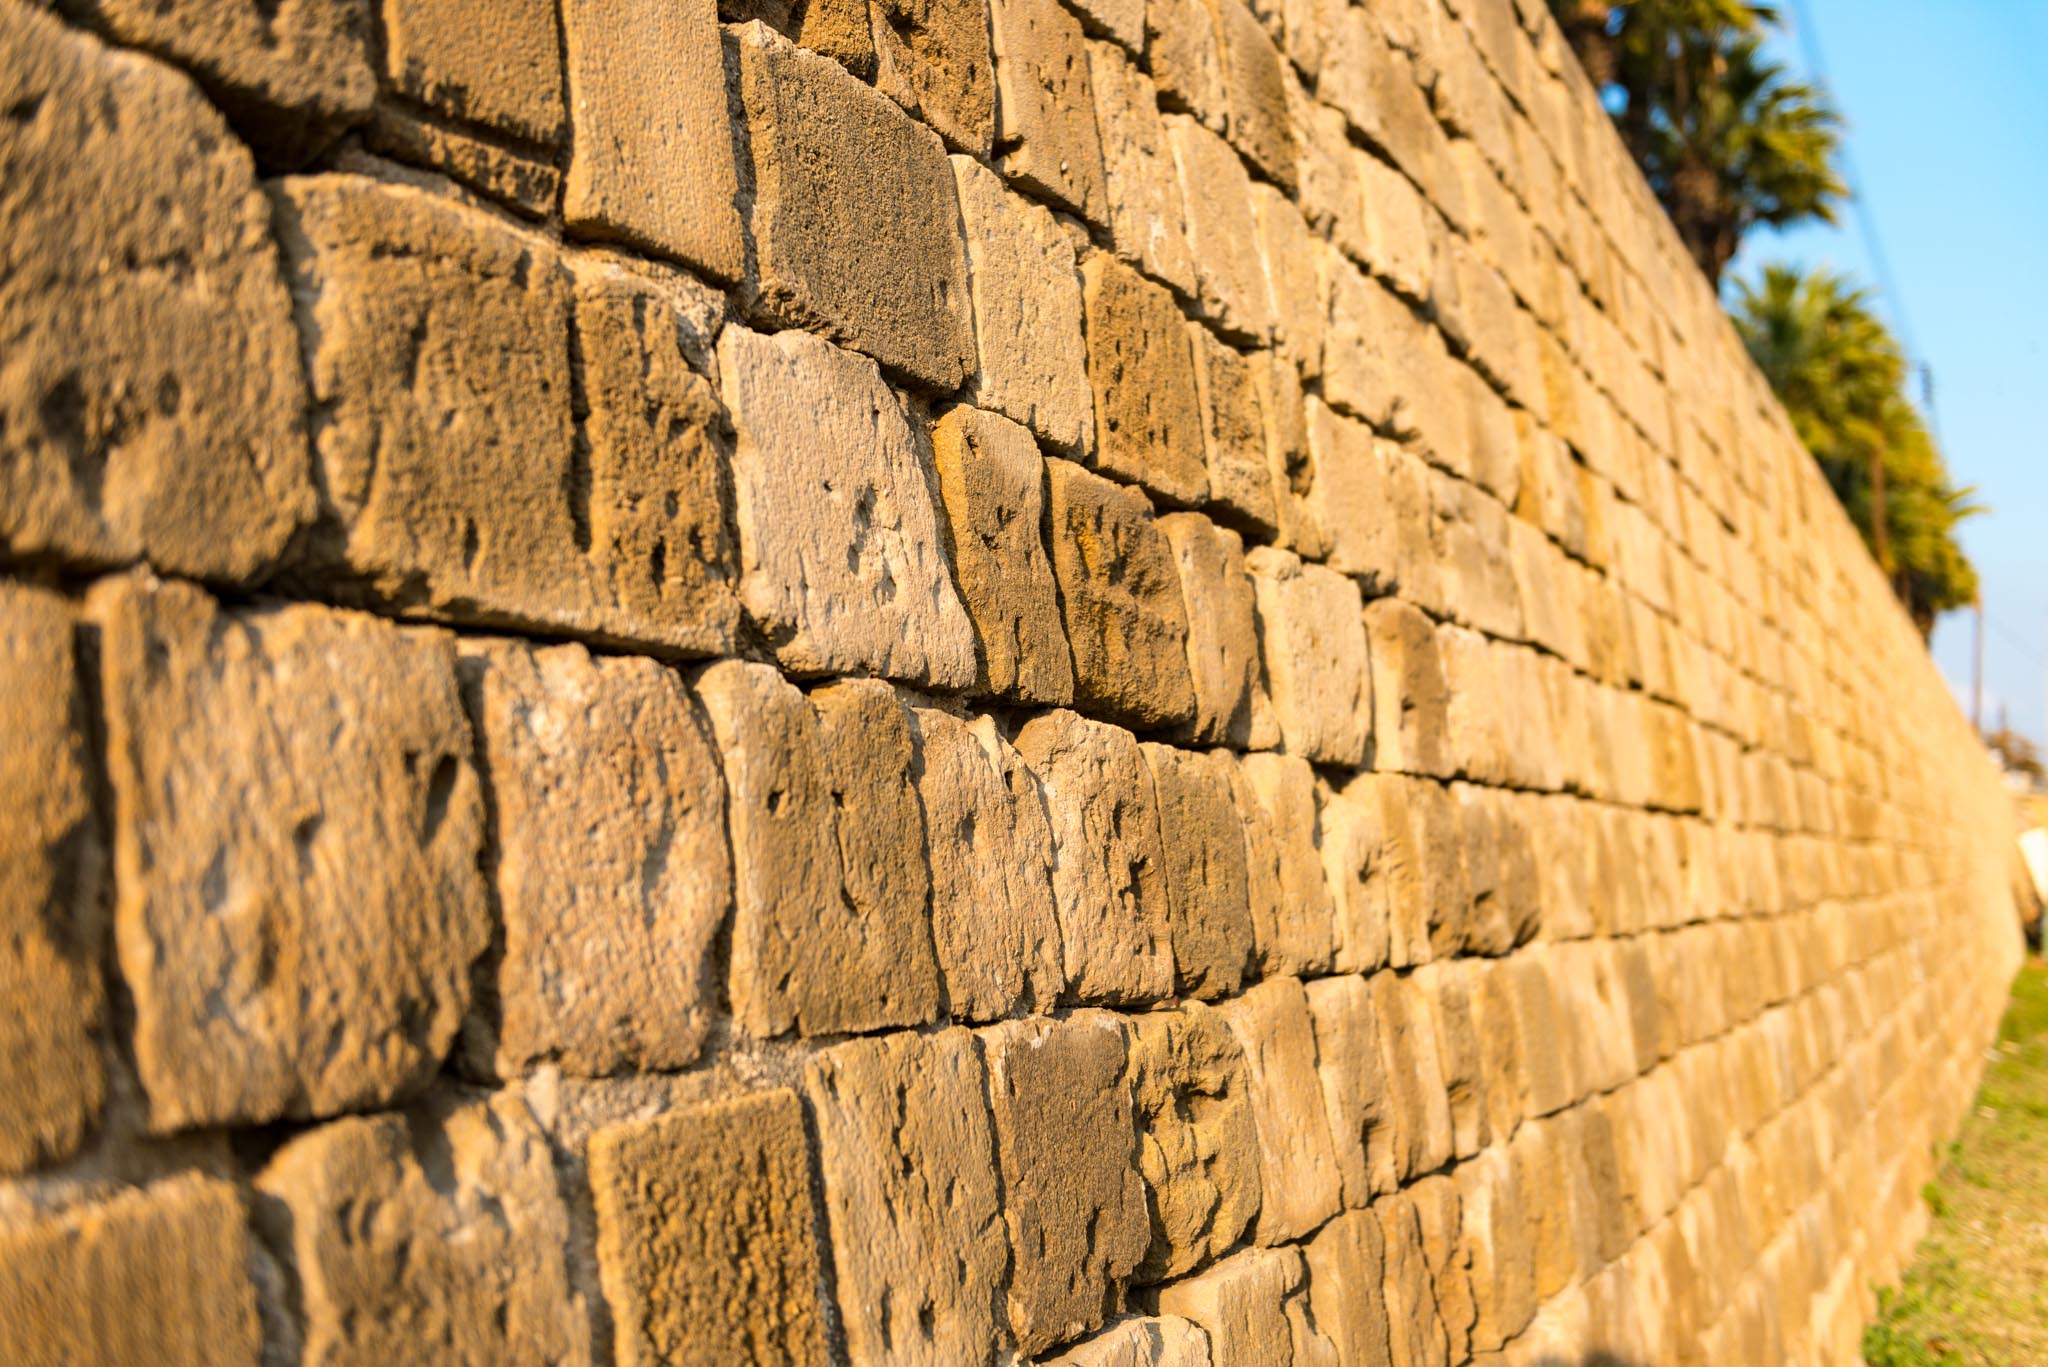 Venetial Walls of Nicosia